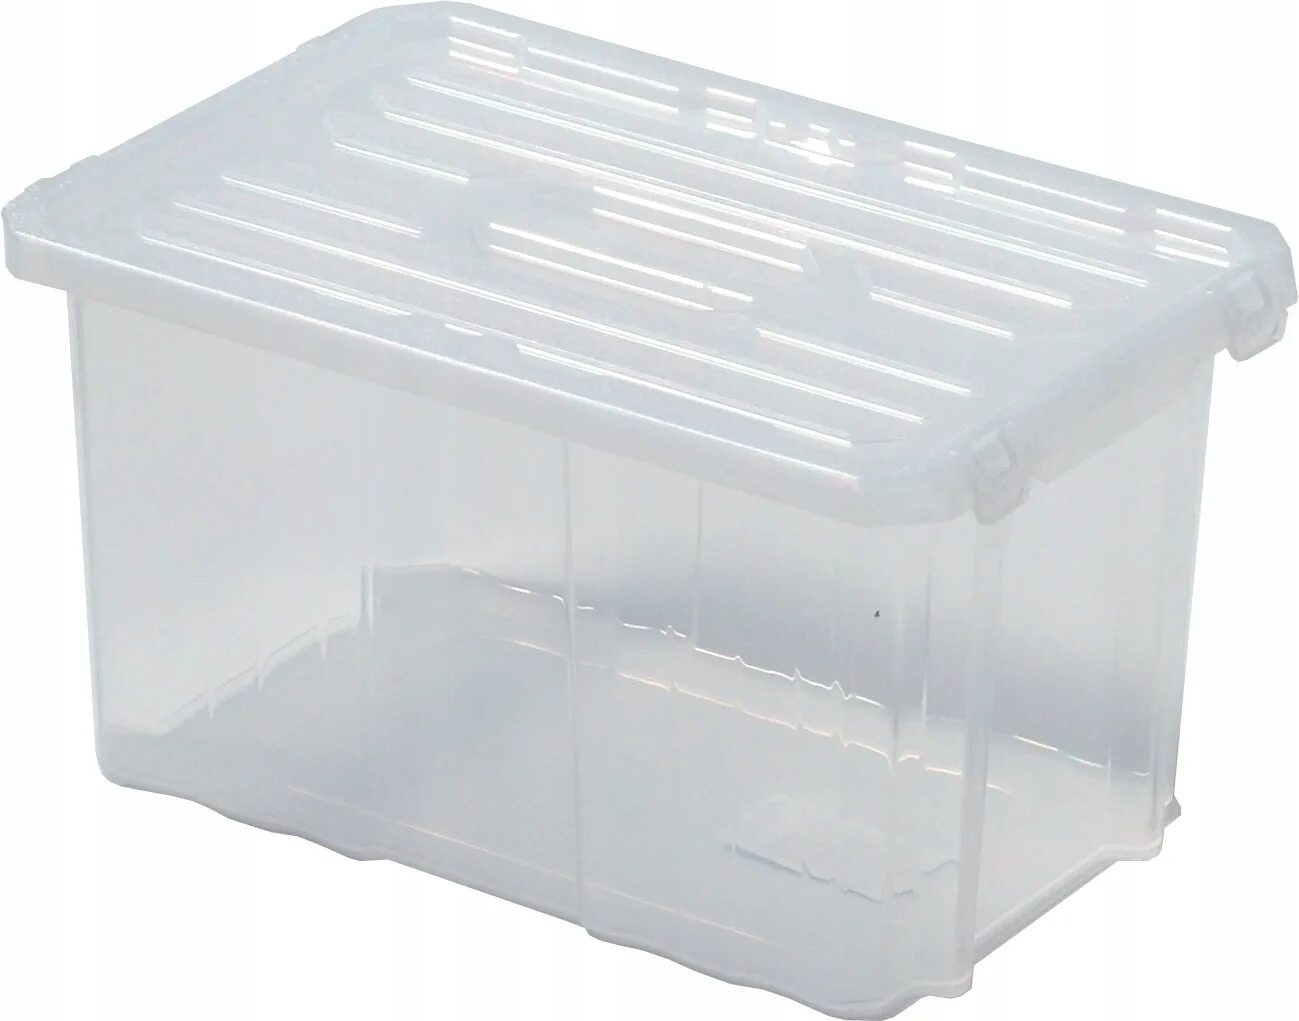 Контейнер пластиковый контейнер купить москва. ЛМР пласт контейнер 10 л. Контейнер пластиковый Rox Box 35л. Контейнер 31на1-gcube(150 оон2"112-20-1). Ящик пластиковый 30х30х30.